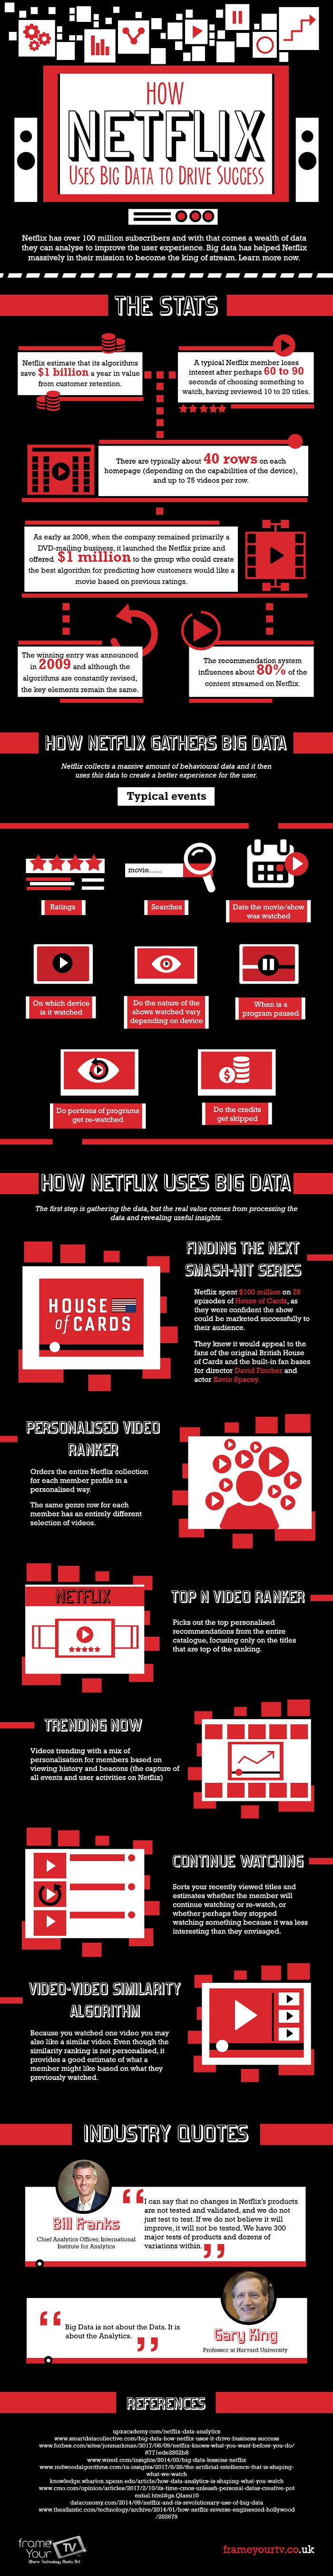 Proč jsou velká data důležitá pro Netflix?